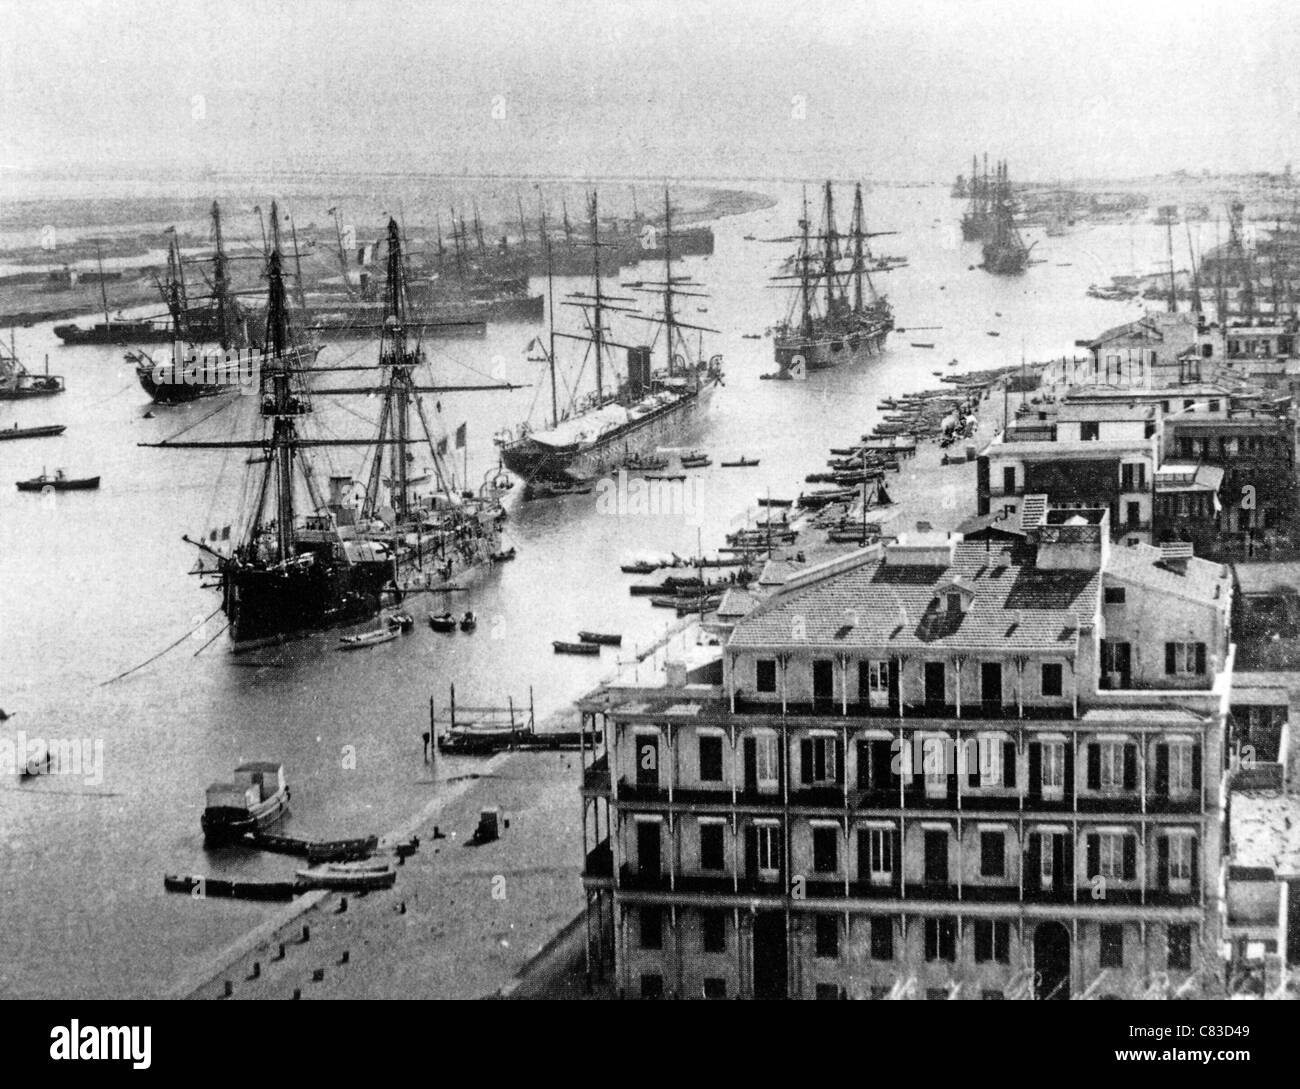 Voyage DANS LE CANAL DE SUEZ à Port Saïd à propos de 1880. Le canal peut être vu s'étendant vers le sud à partir de cette entrée nord Banque D'Images